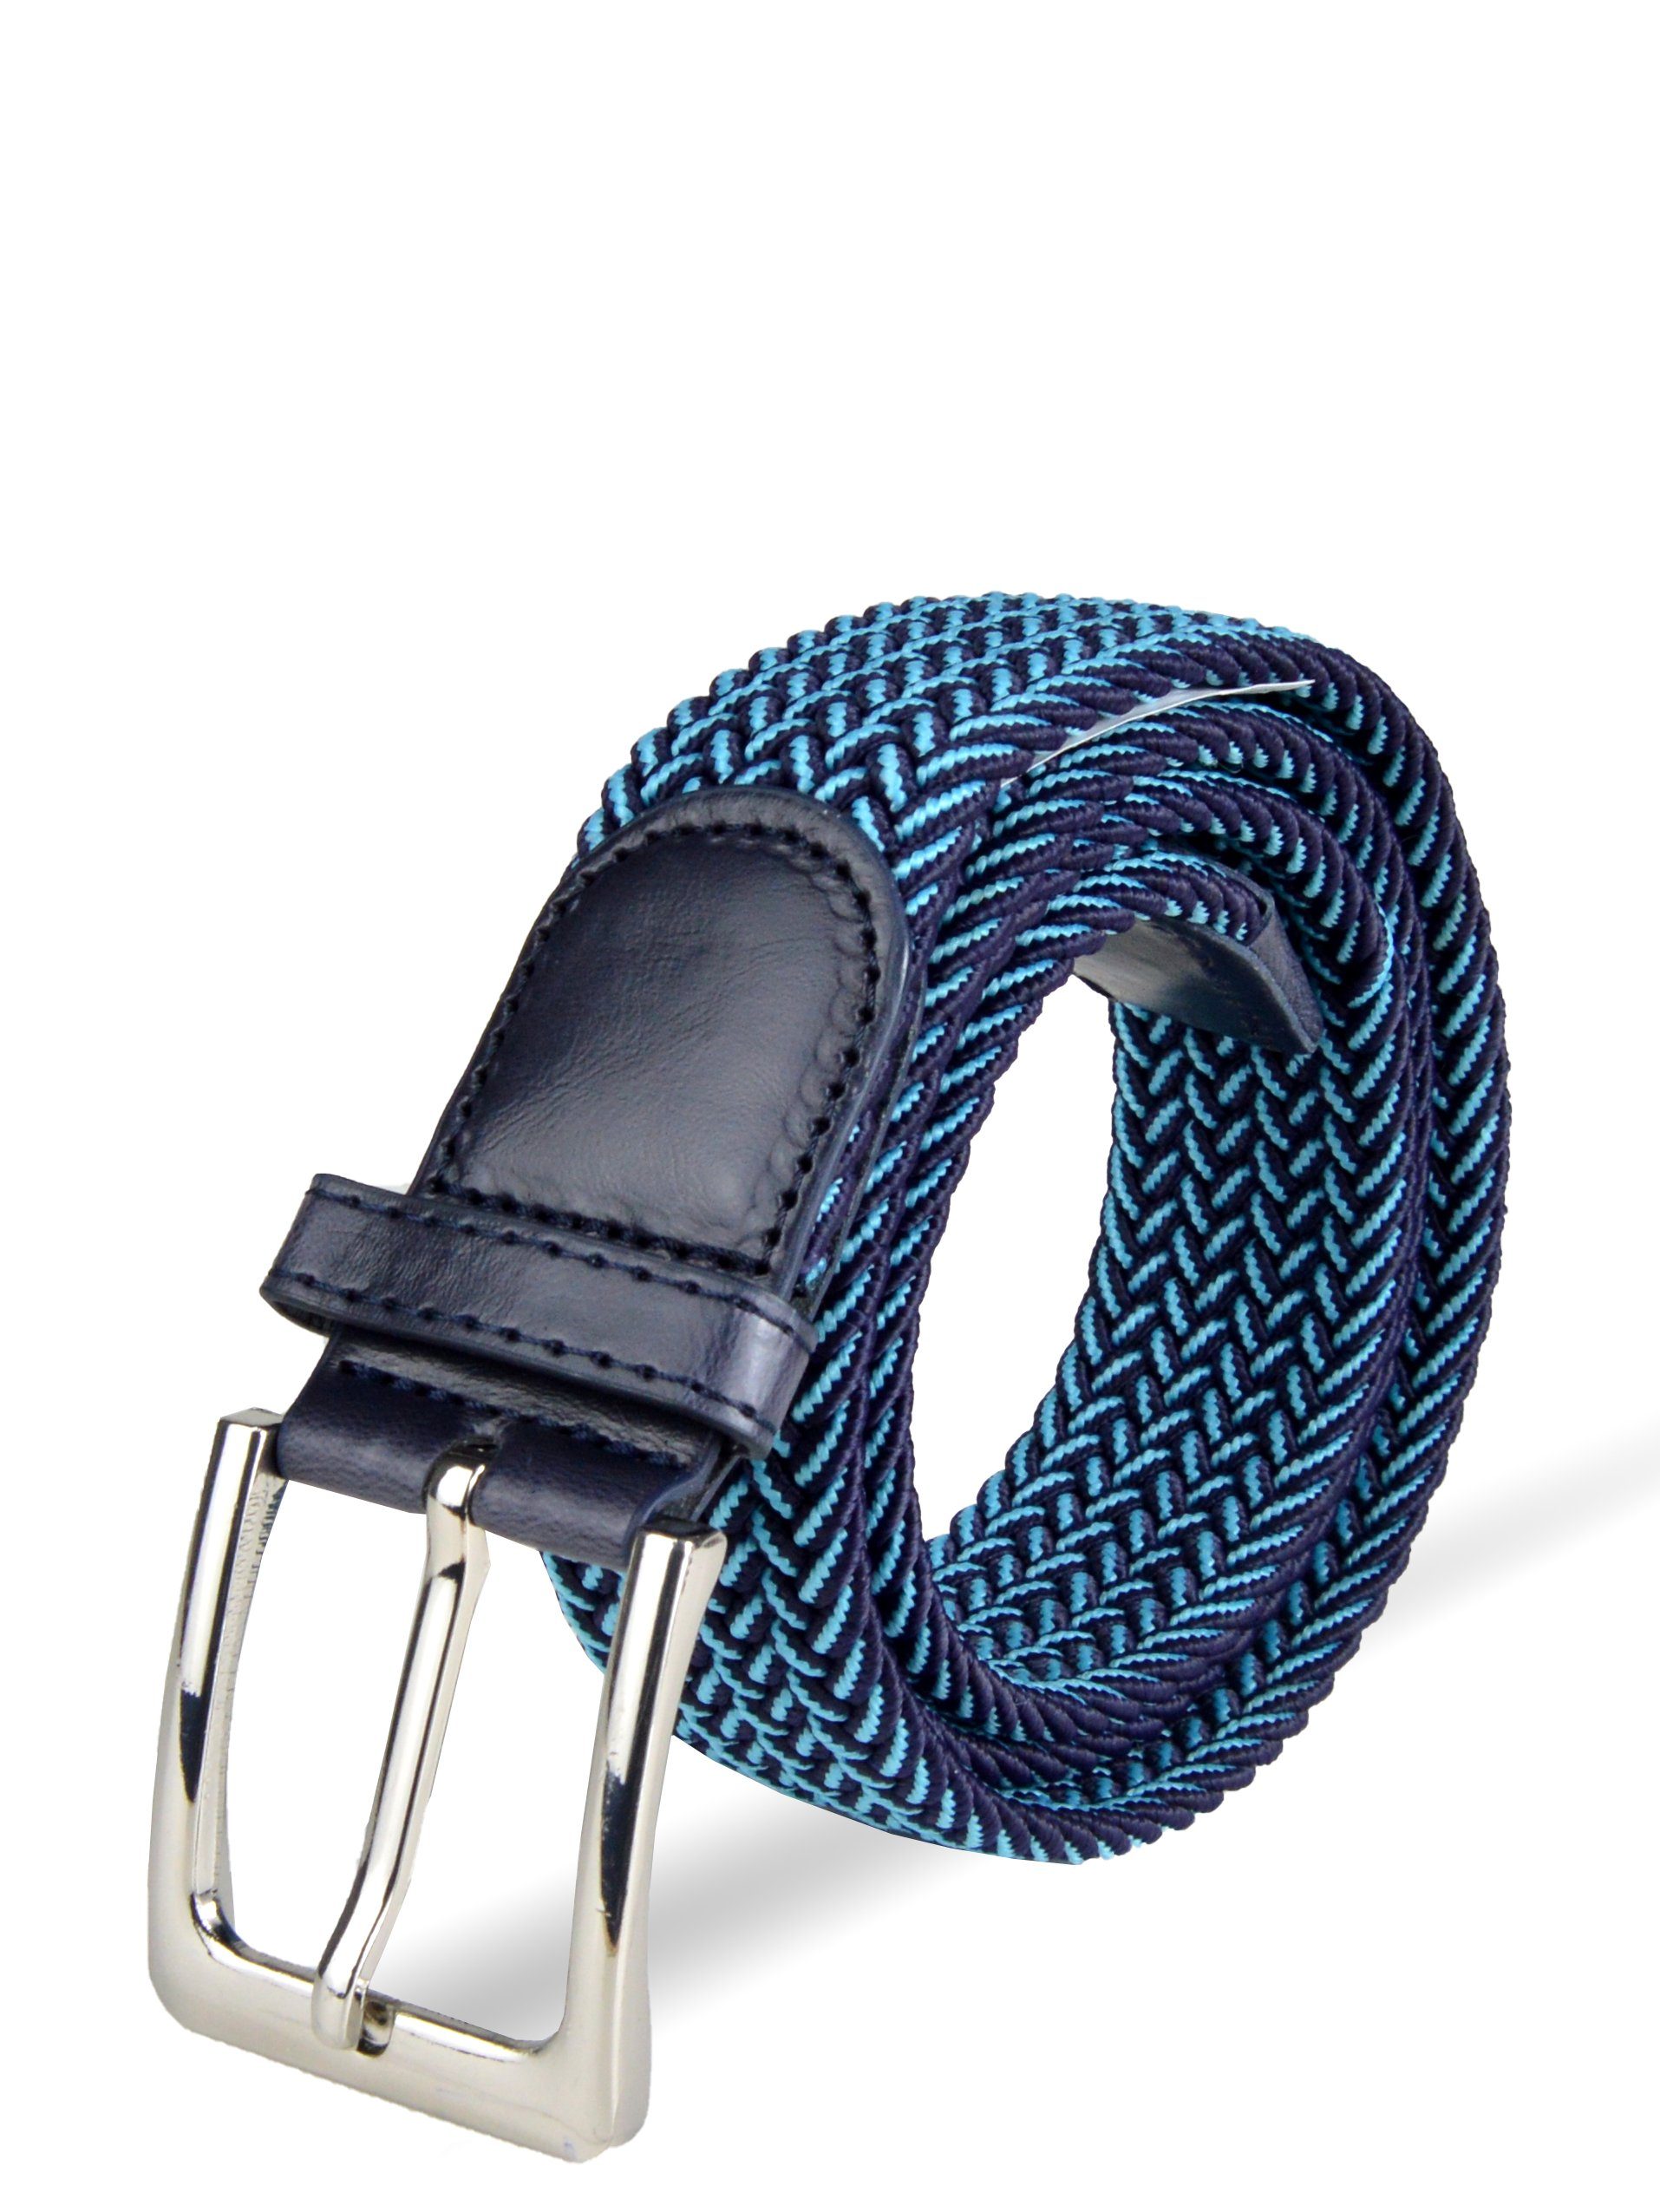 Herren stufenlos elastischer (105-150cm) Stoffgürtel Blau-Hellblau Stretchgürtel Flechtgürtel Socked einstellbar,